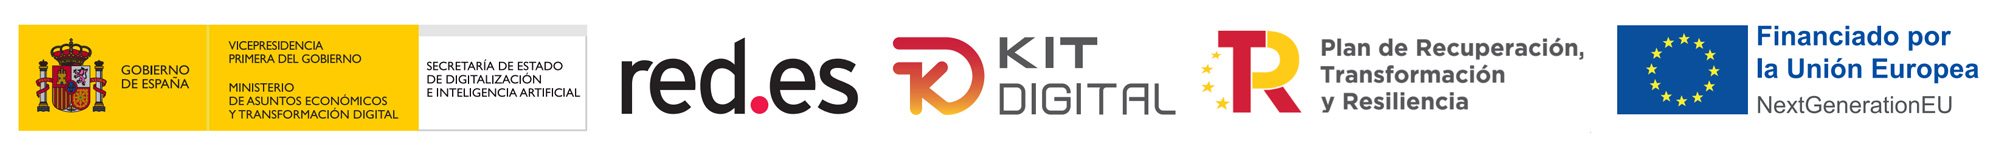 Logotipos-Kit-digital